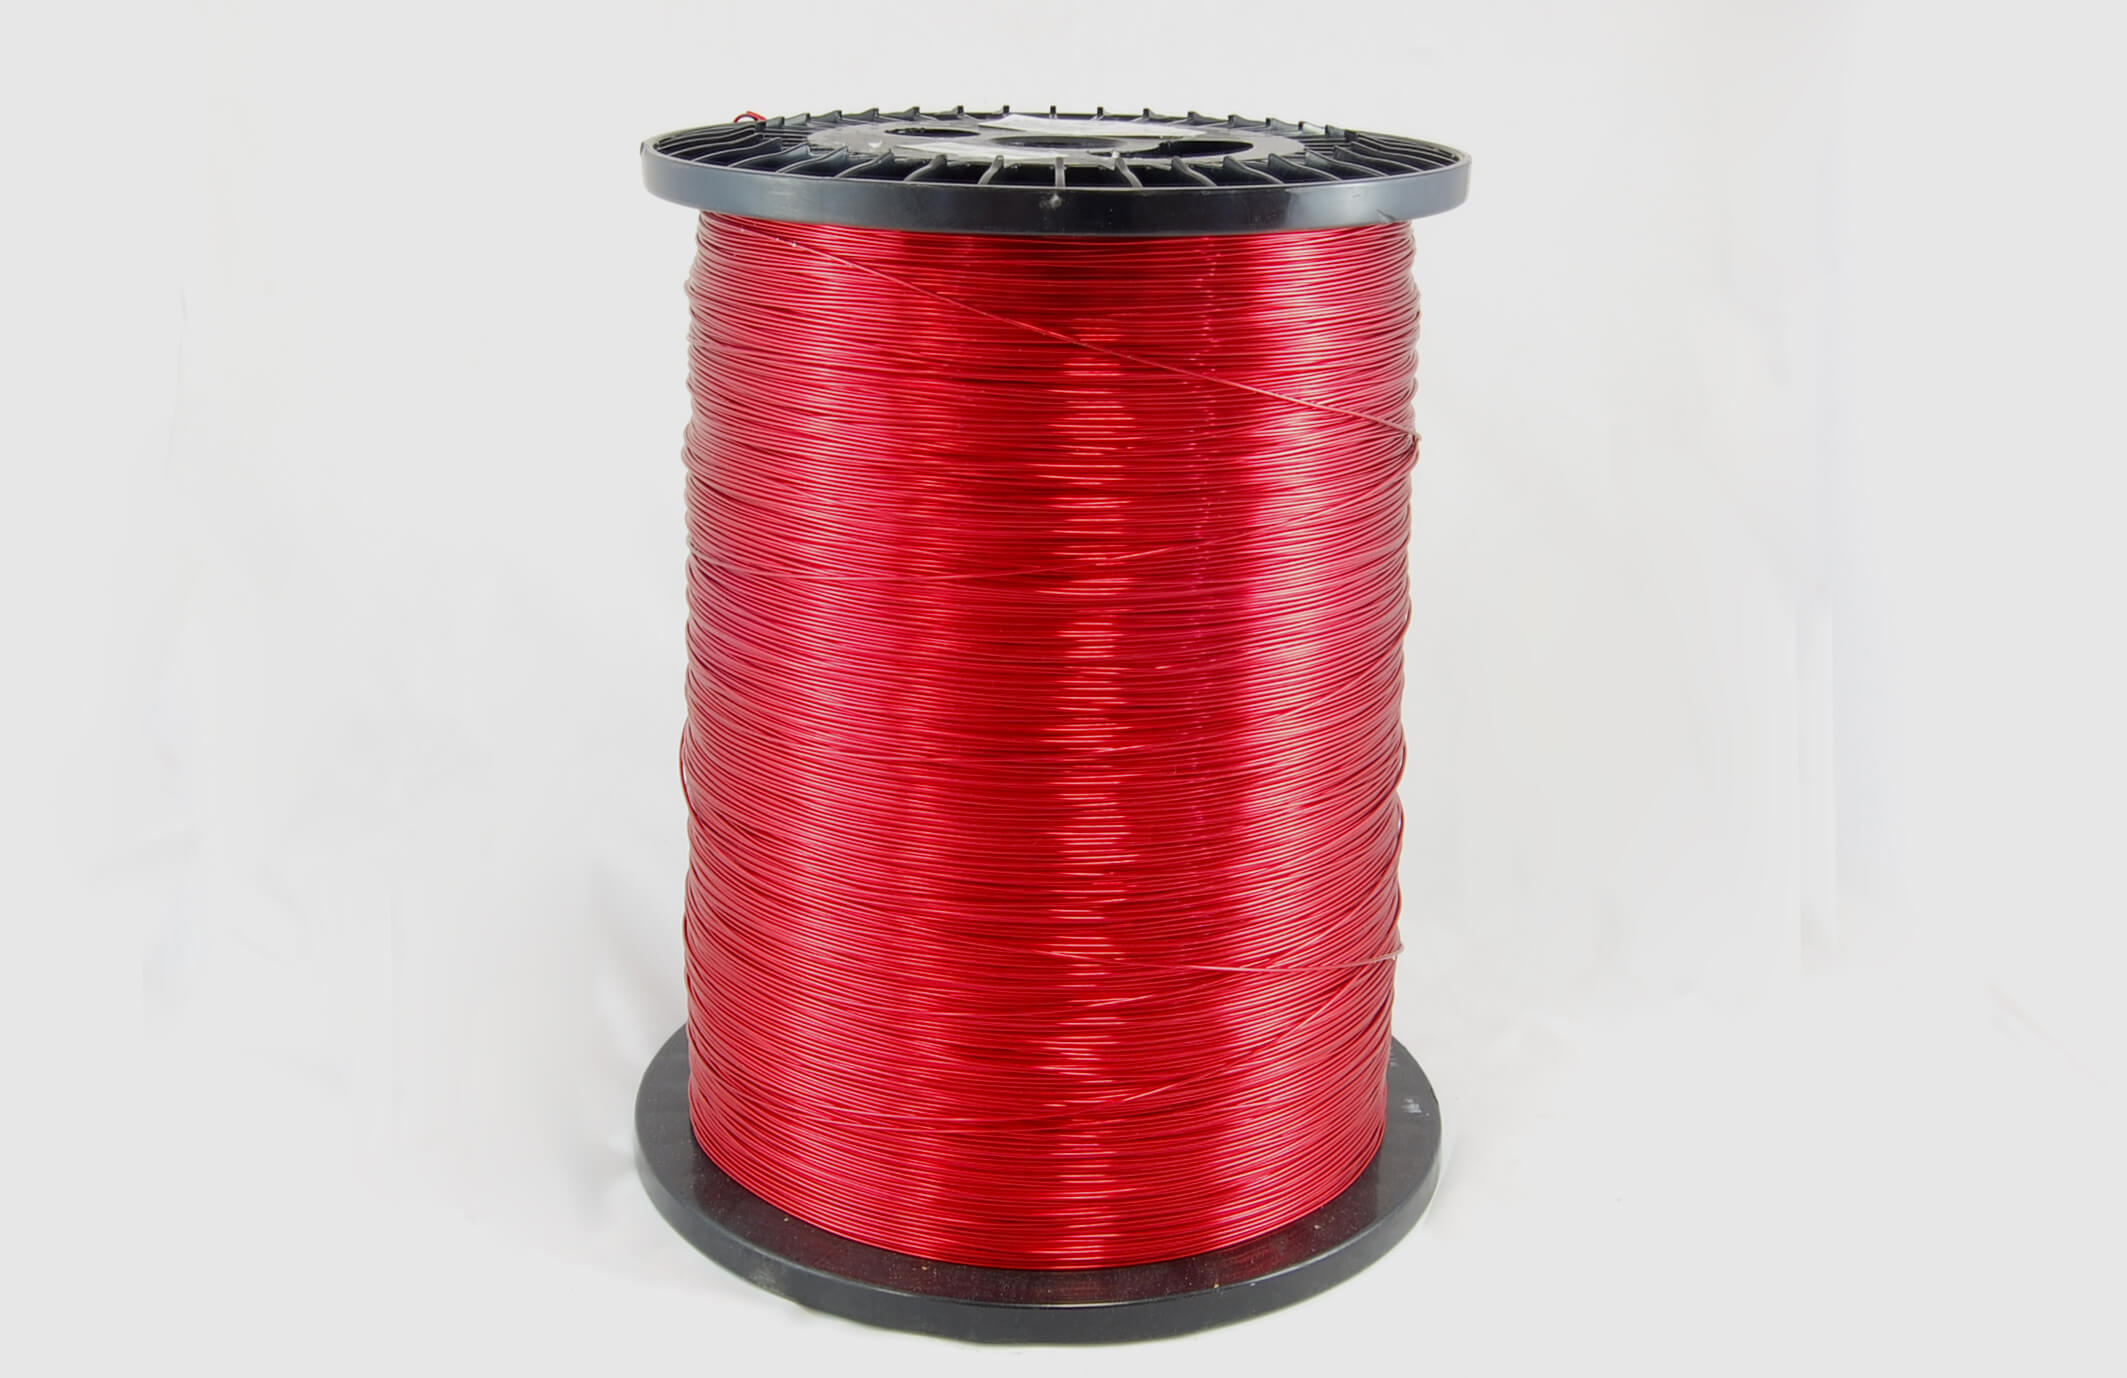 #21 Heavy Nysol  Round HNSR MW 80 Copper Magnet Wire 155°C, red, 85 LB box (average wght.)